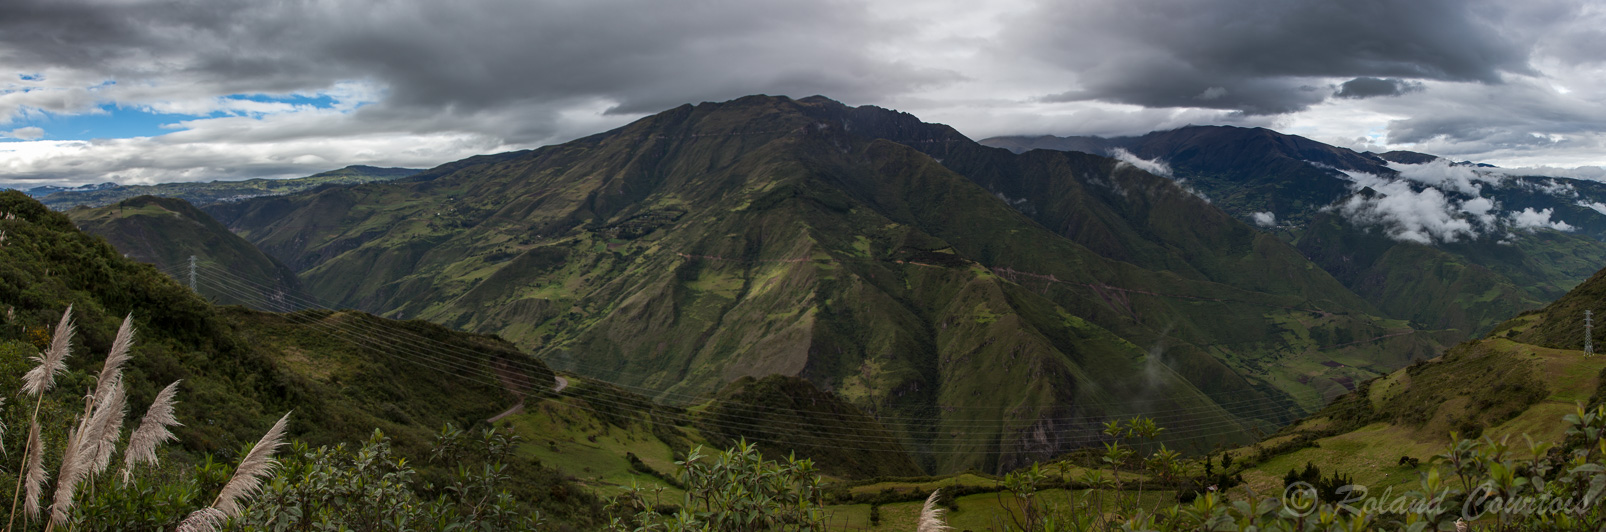 Paysage de l'une des cordillères des Andes